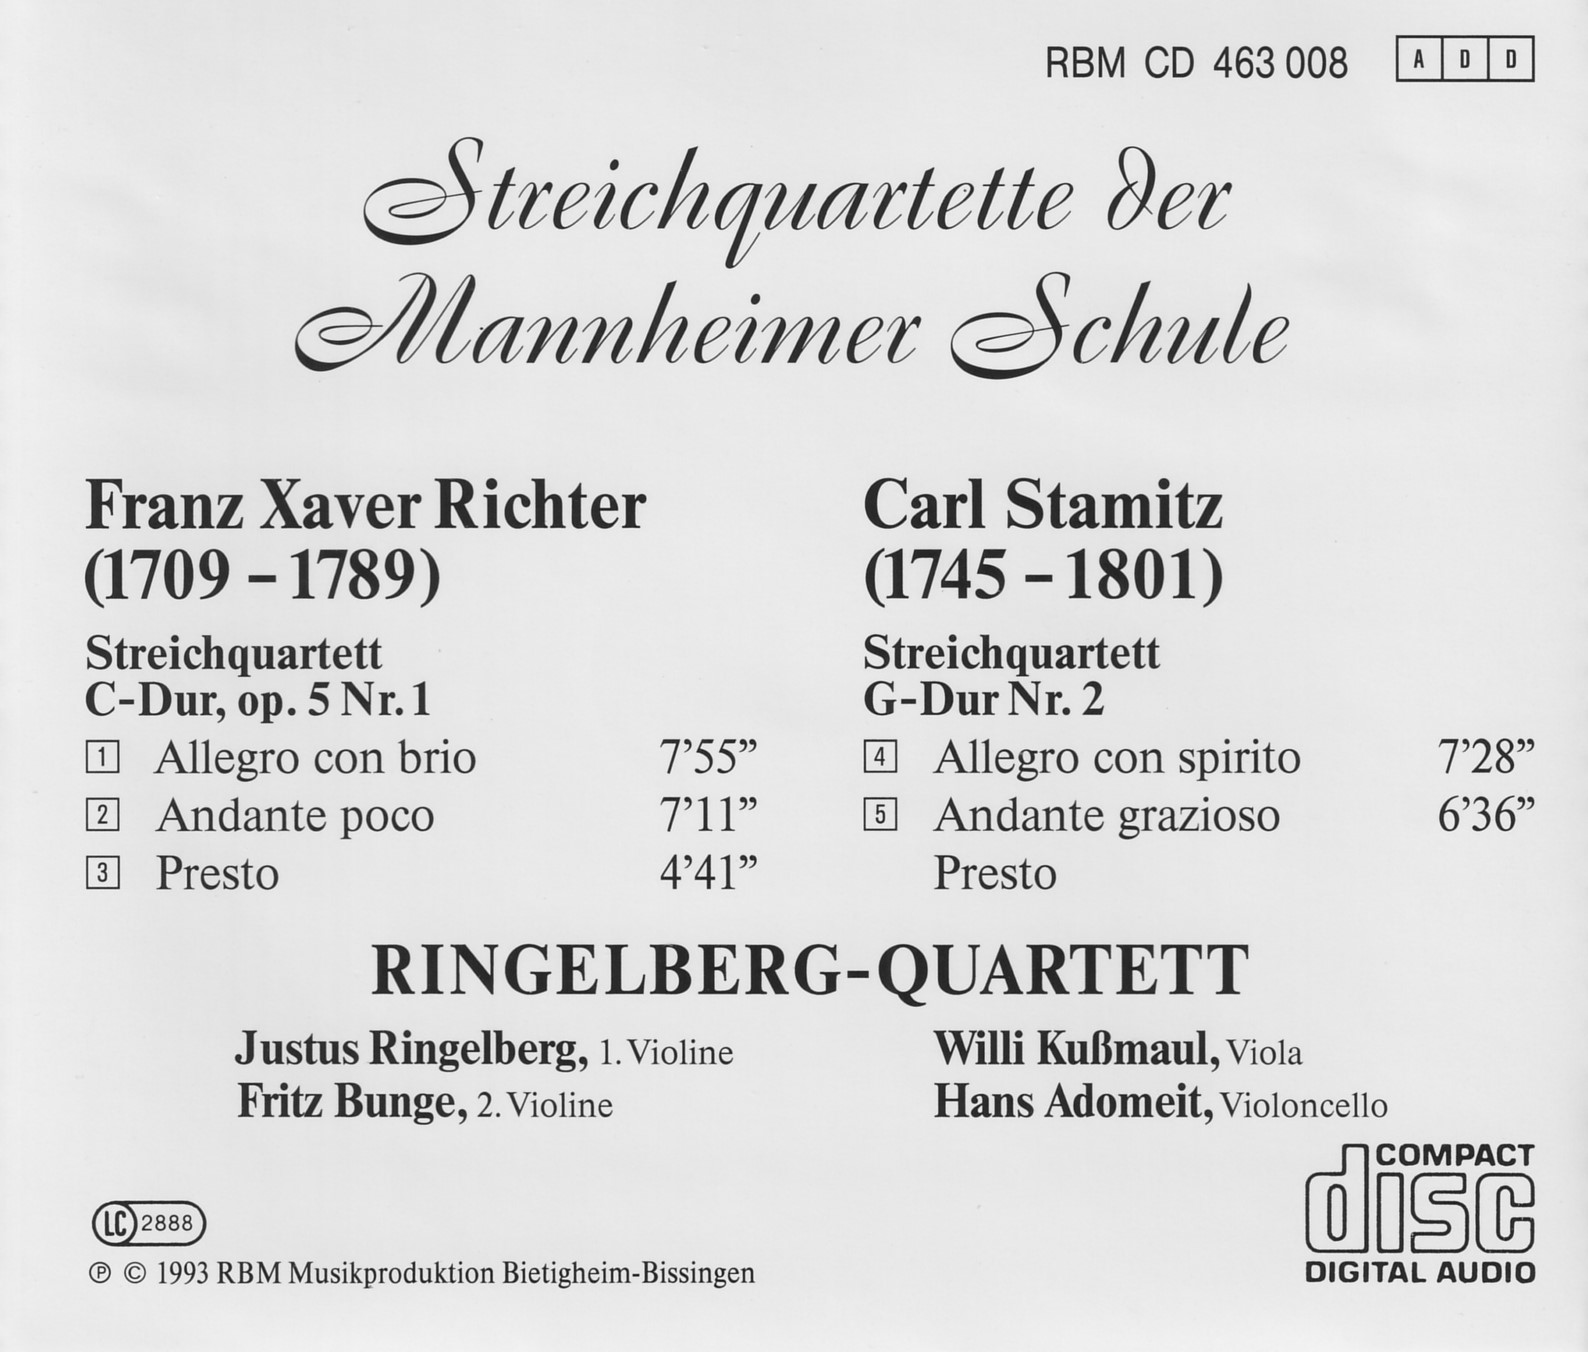 Streichquartette der Mannheimer Schule